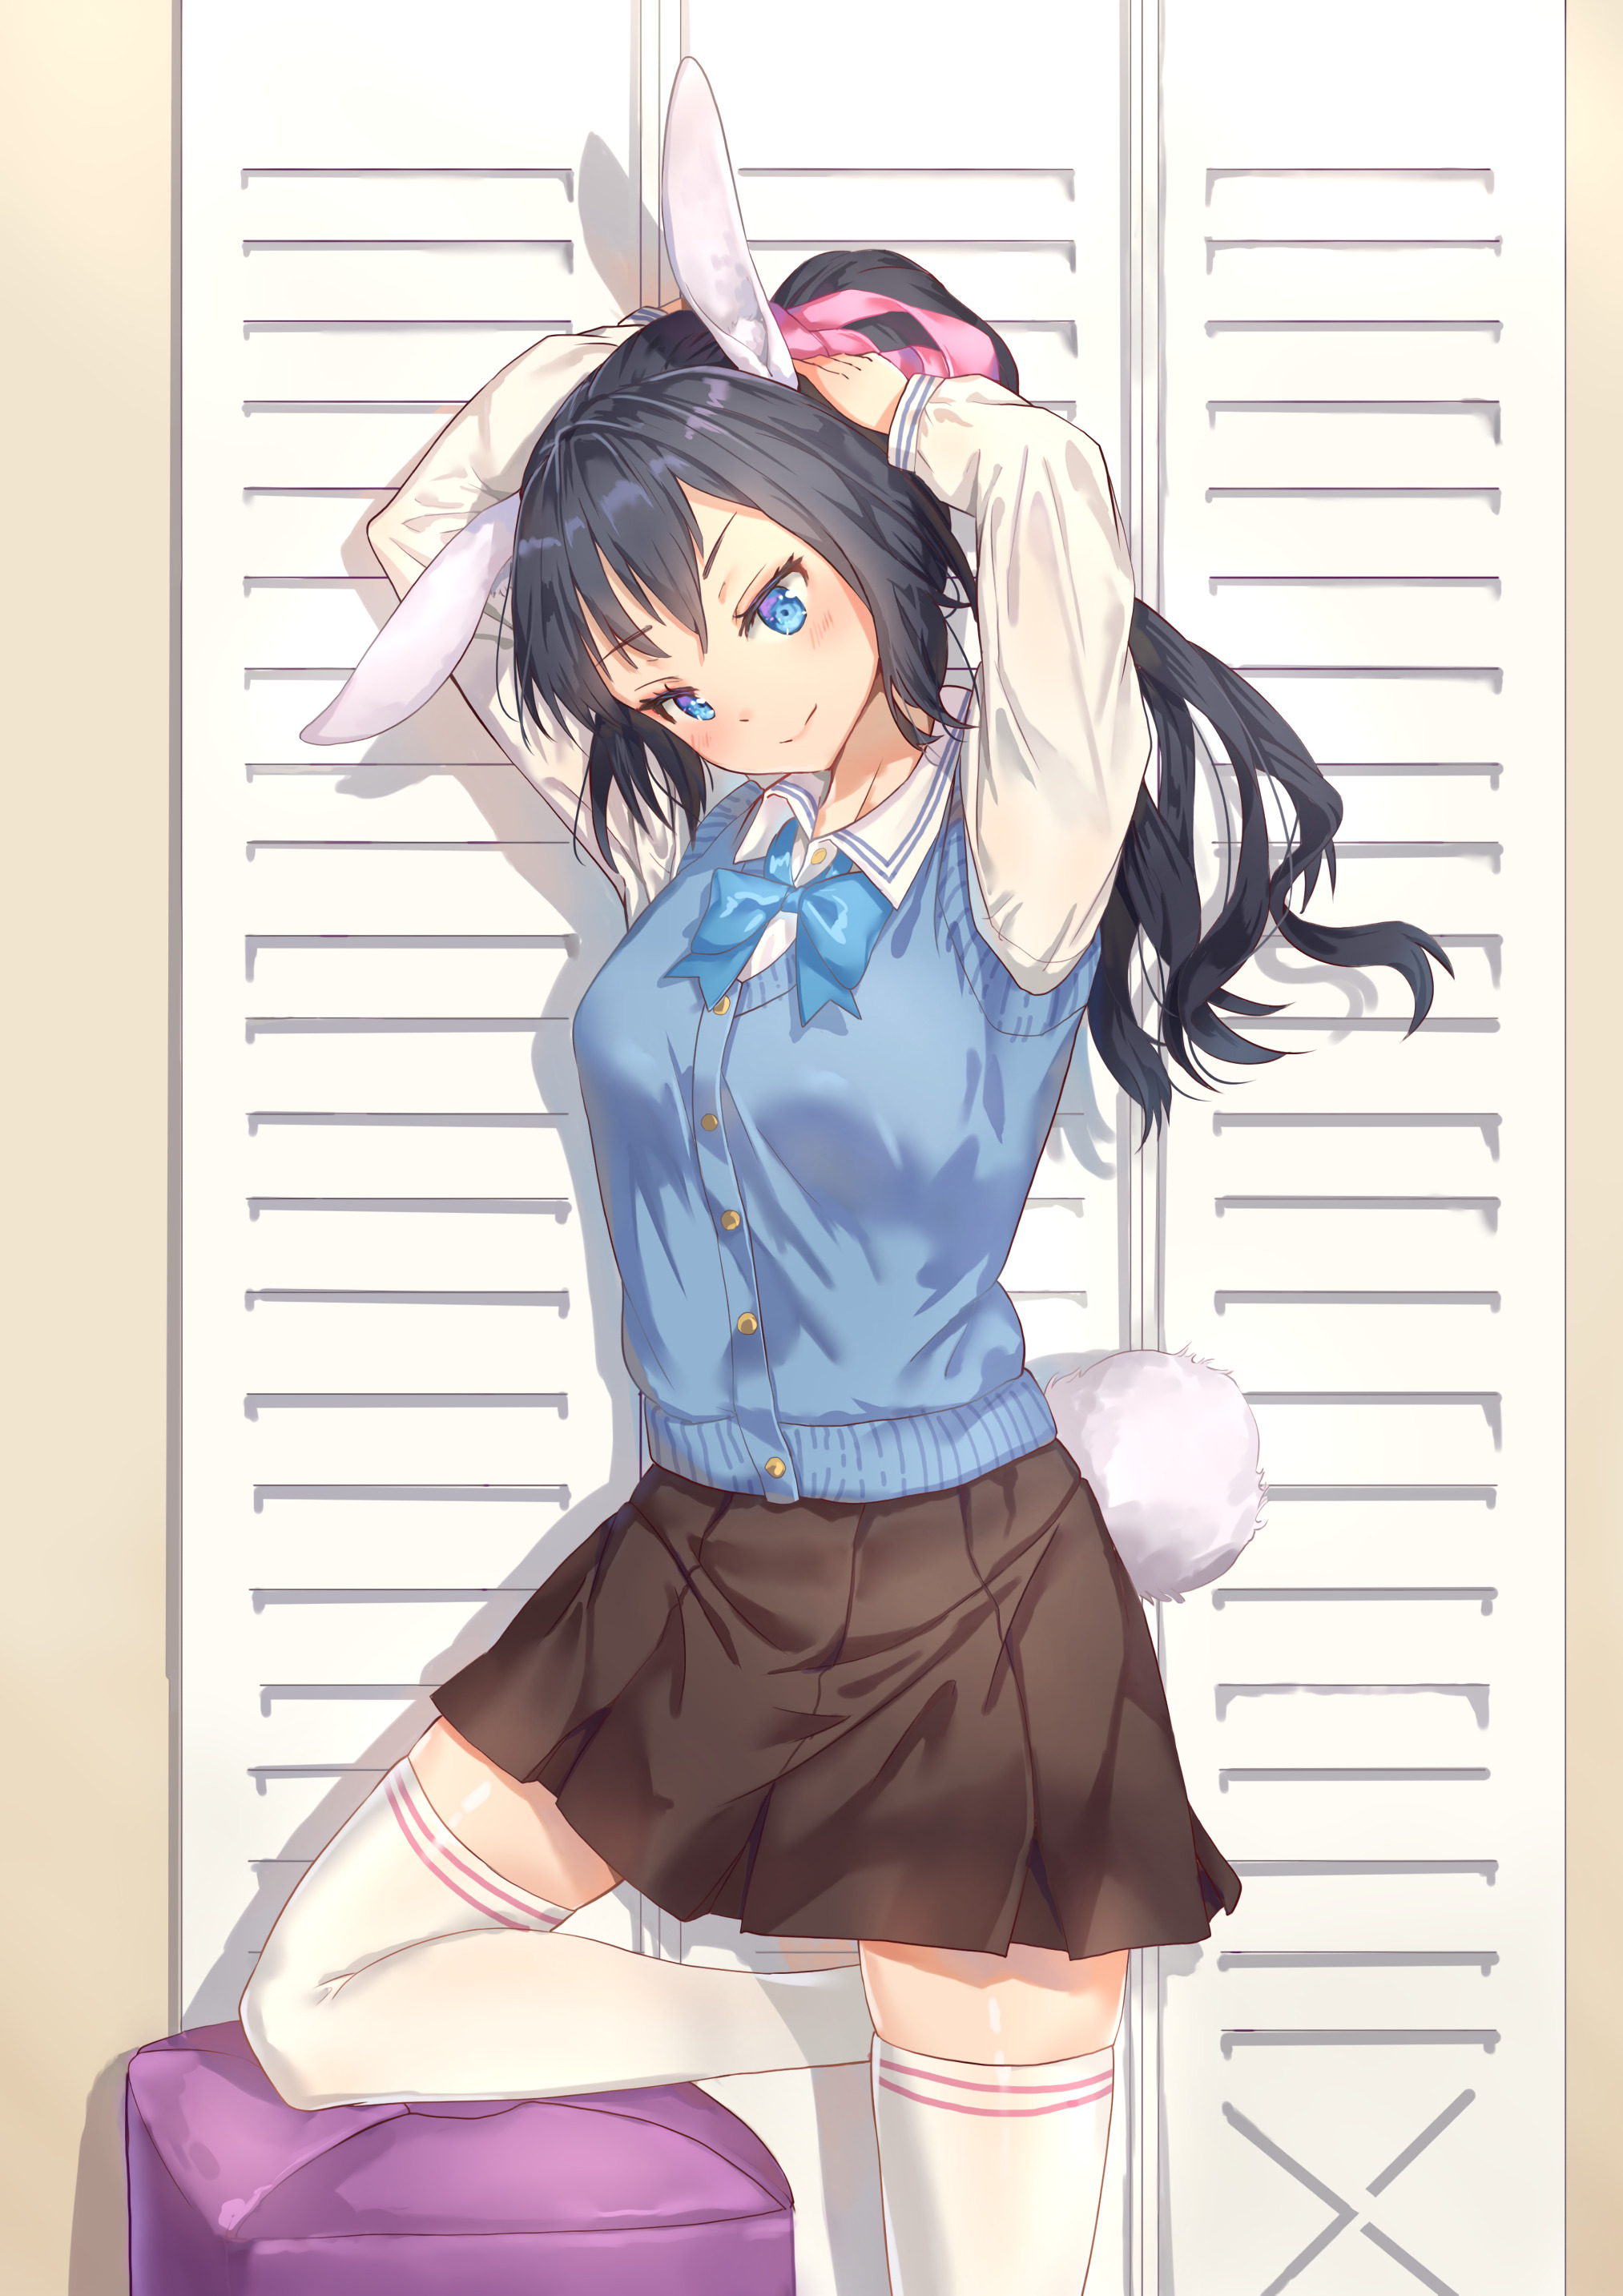 Girl Schoolgirl Ears Hare Anime